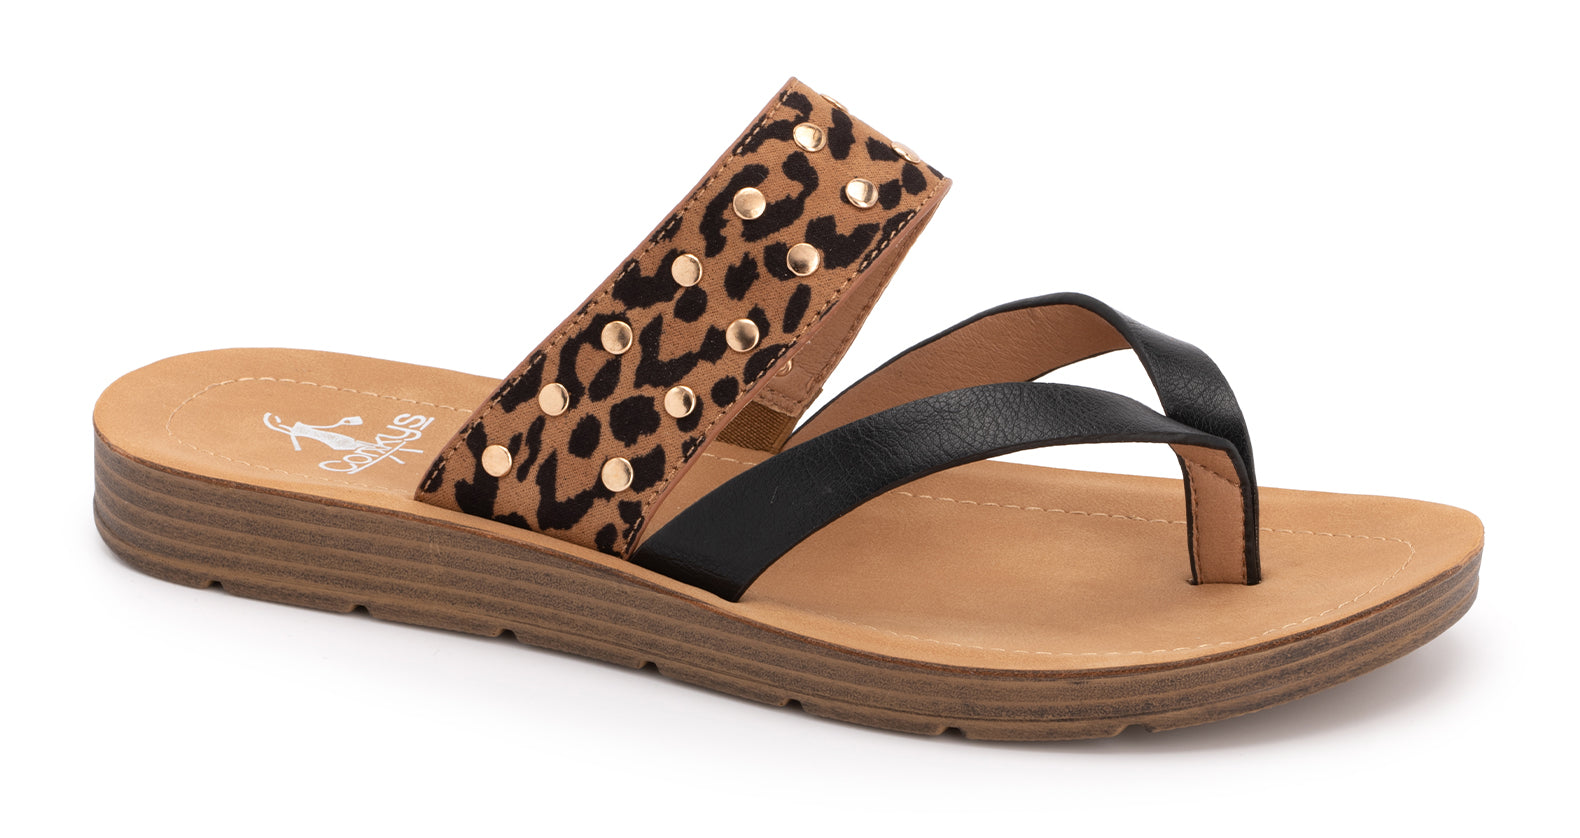 CORKY'S leopard sandals